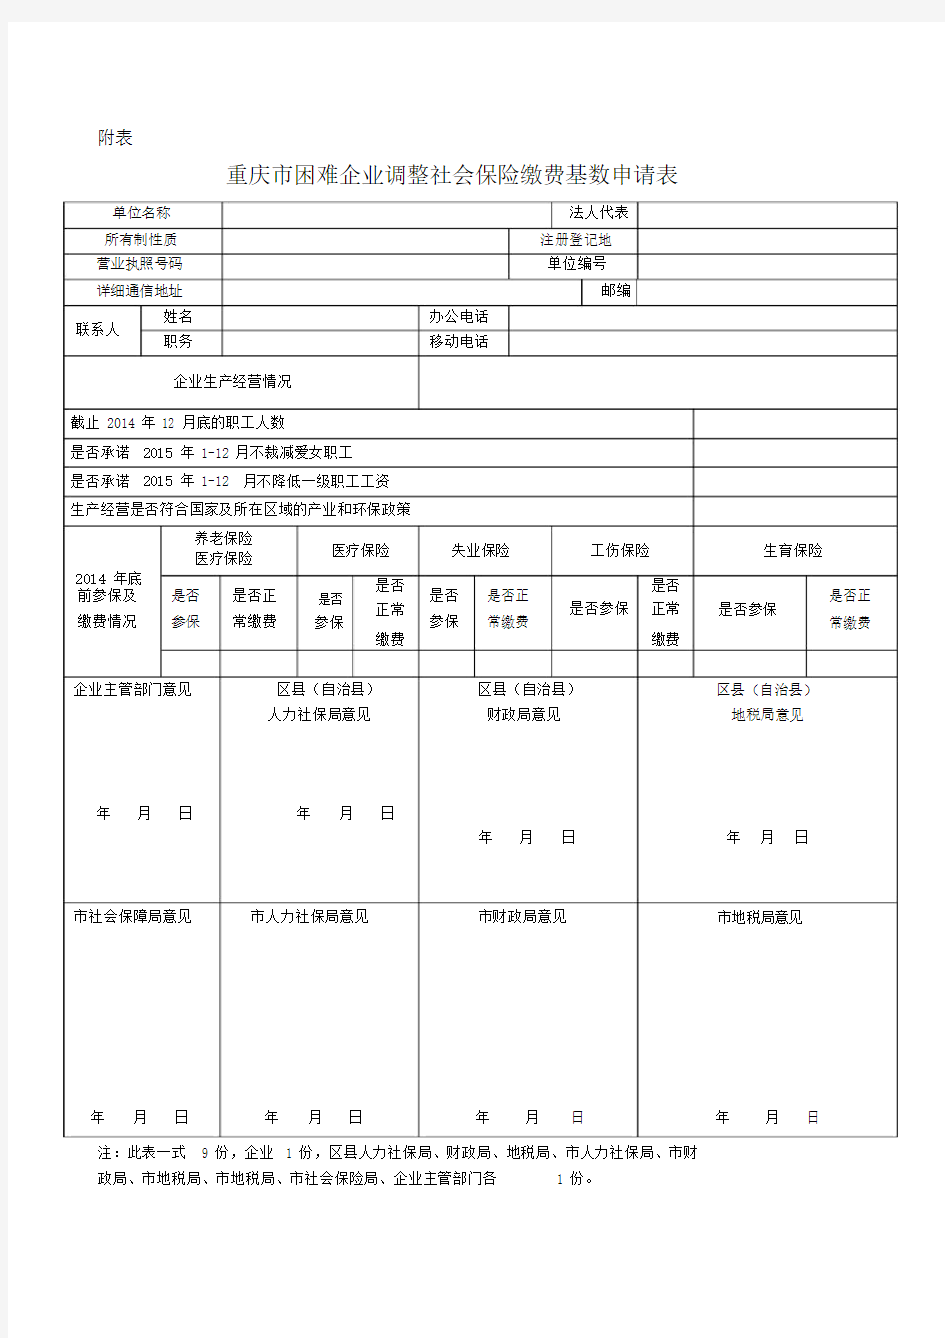 重庆市困难企业调整社会保险缴费基数申请表